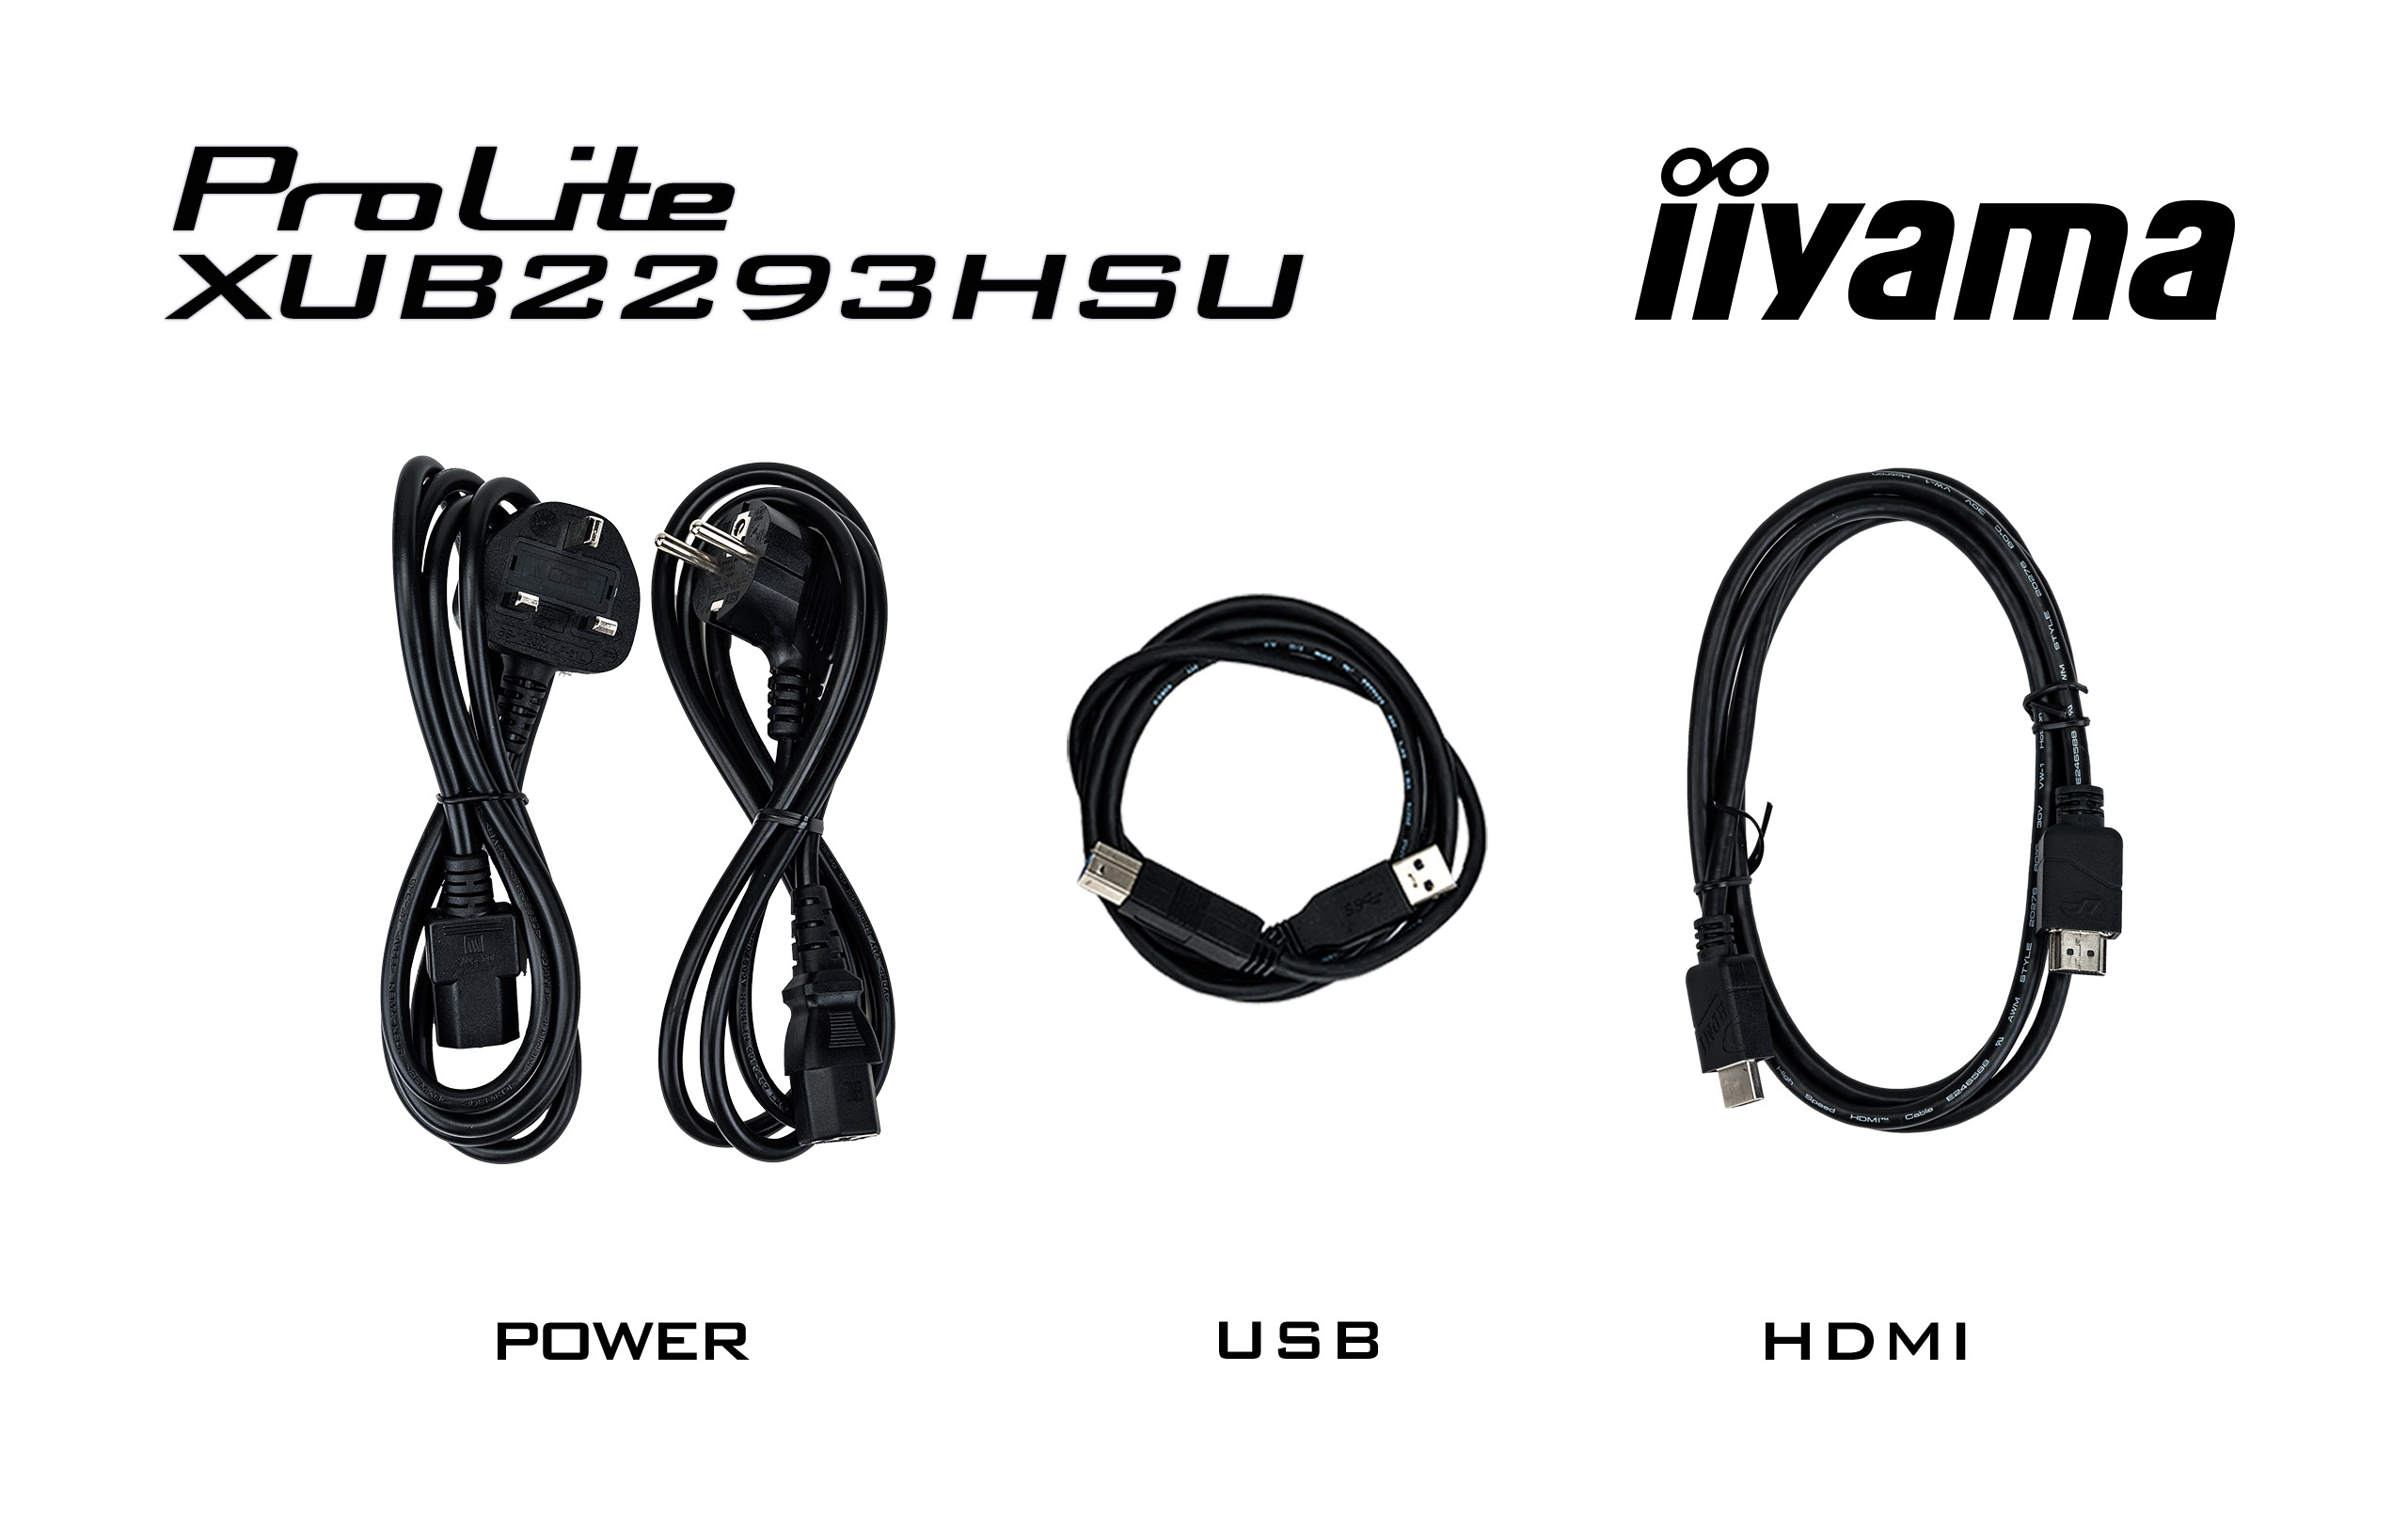 iiyama ProLite/ XUB2293HSU-B6/ 21, 5"/ IPS/ FHD/ 100Hz/ 1ms/ Black/ 3R 